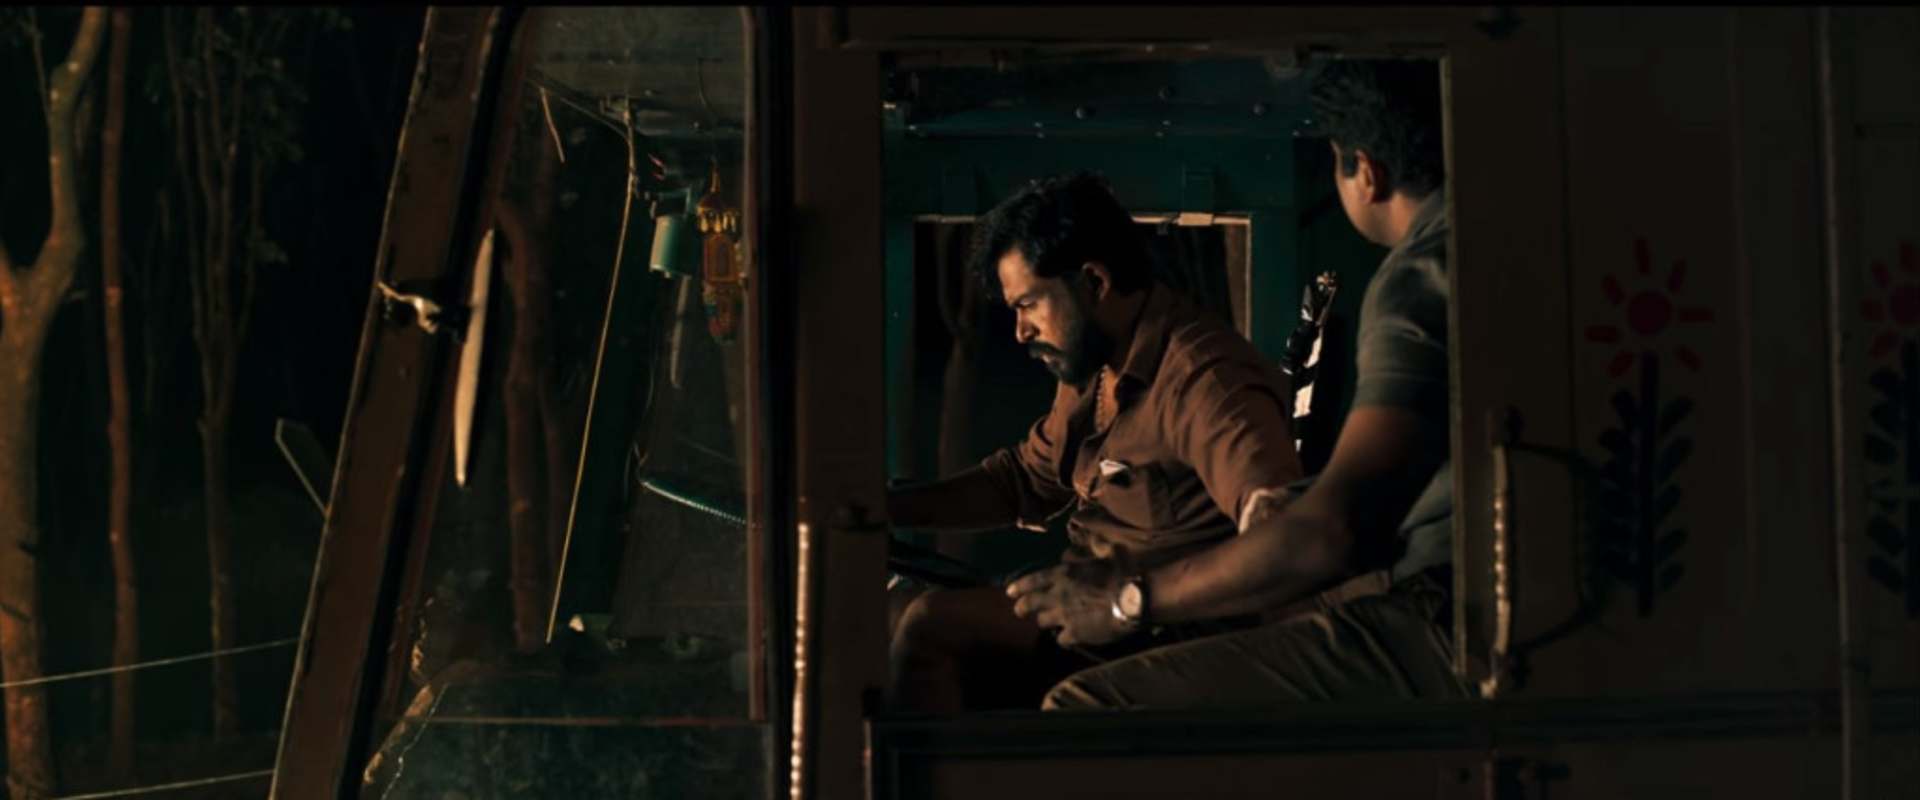 Rewind 2022: Top 10 Best Tamil Movies To Watch on Hotstar - Filmy Focus